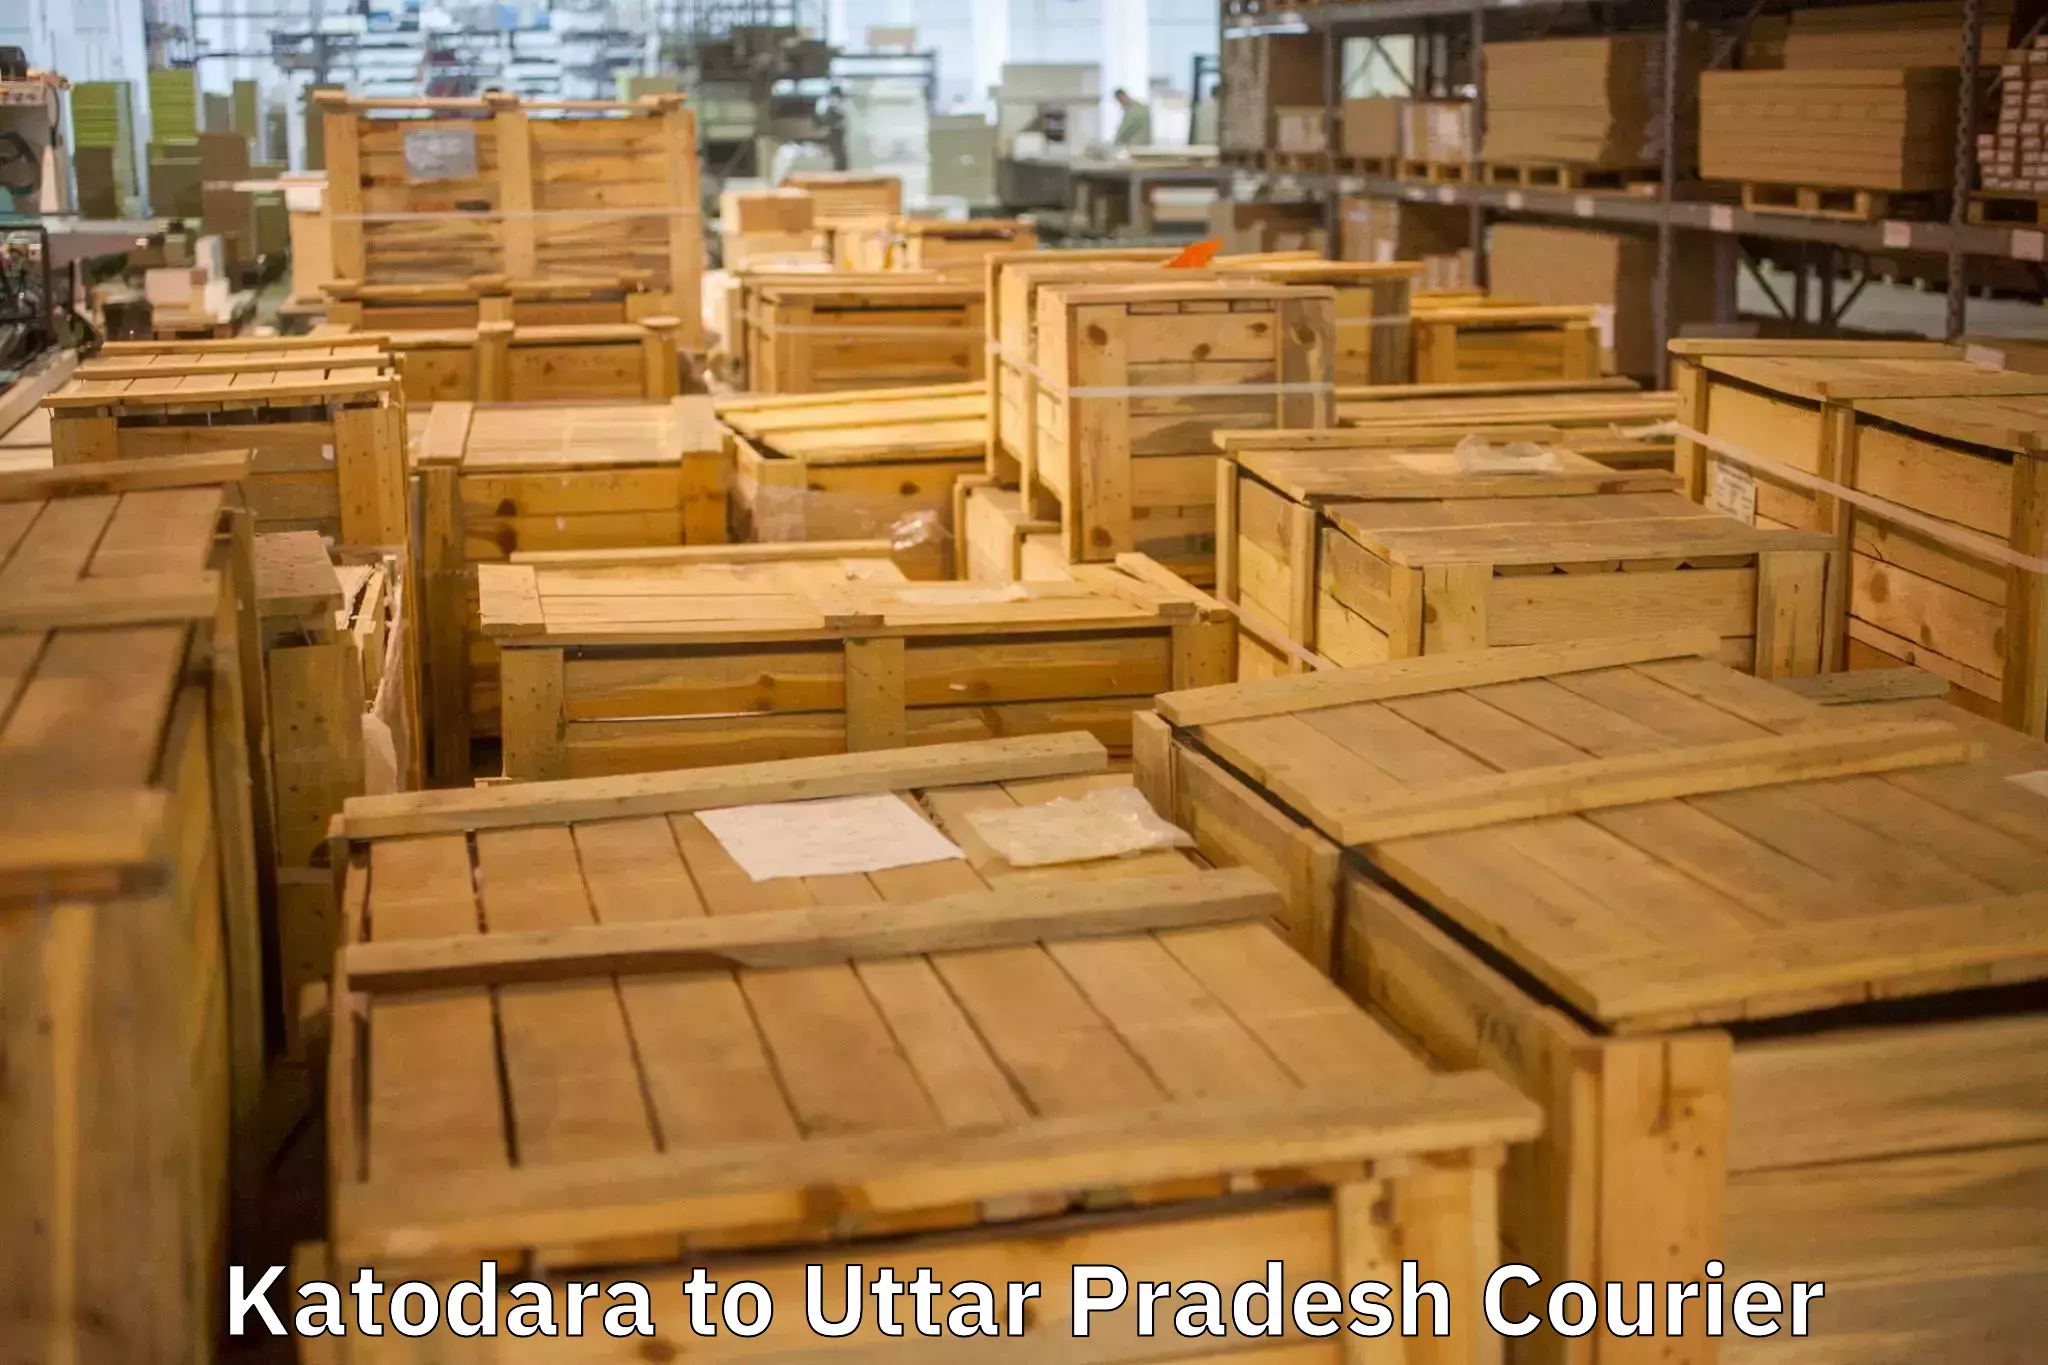 Furniture moving services in Katodara to Sewarhi